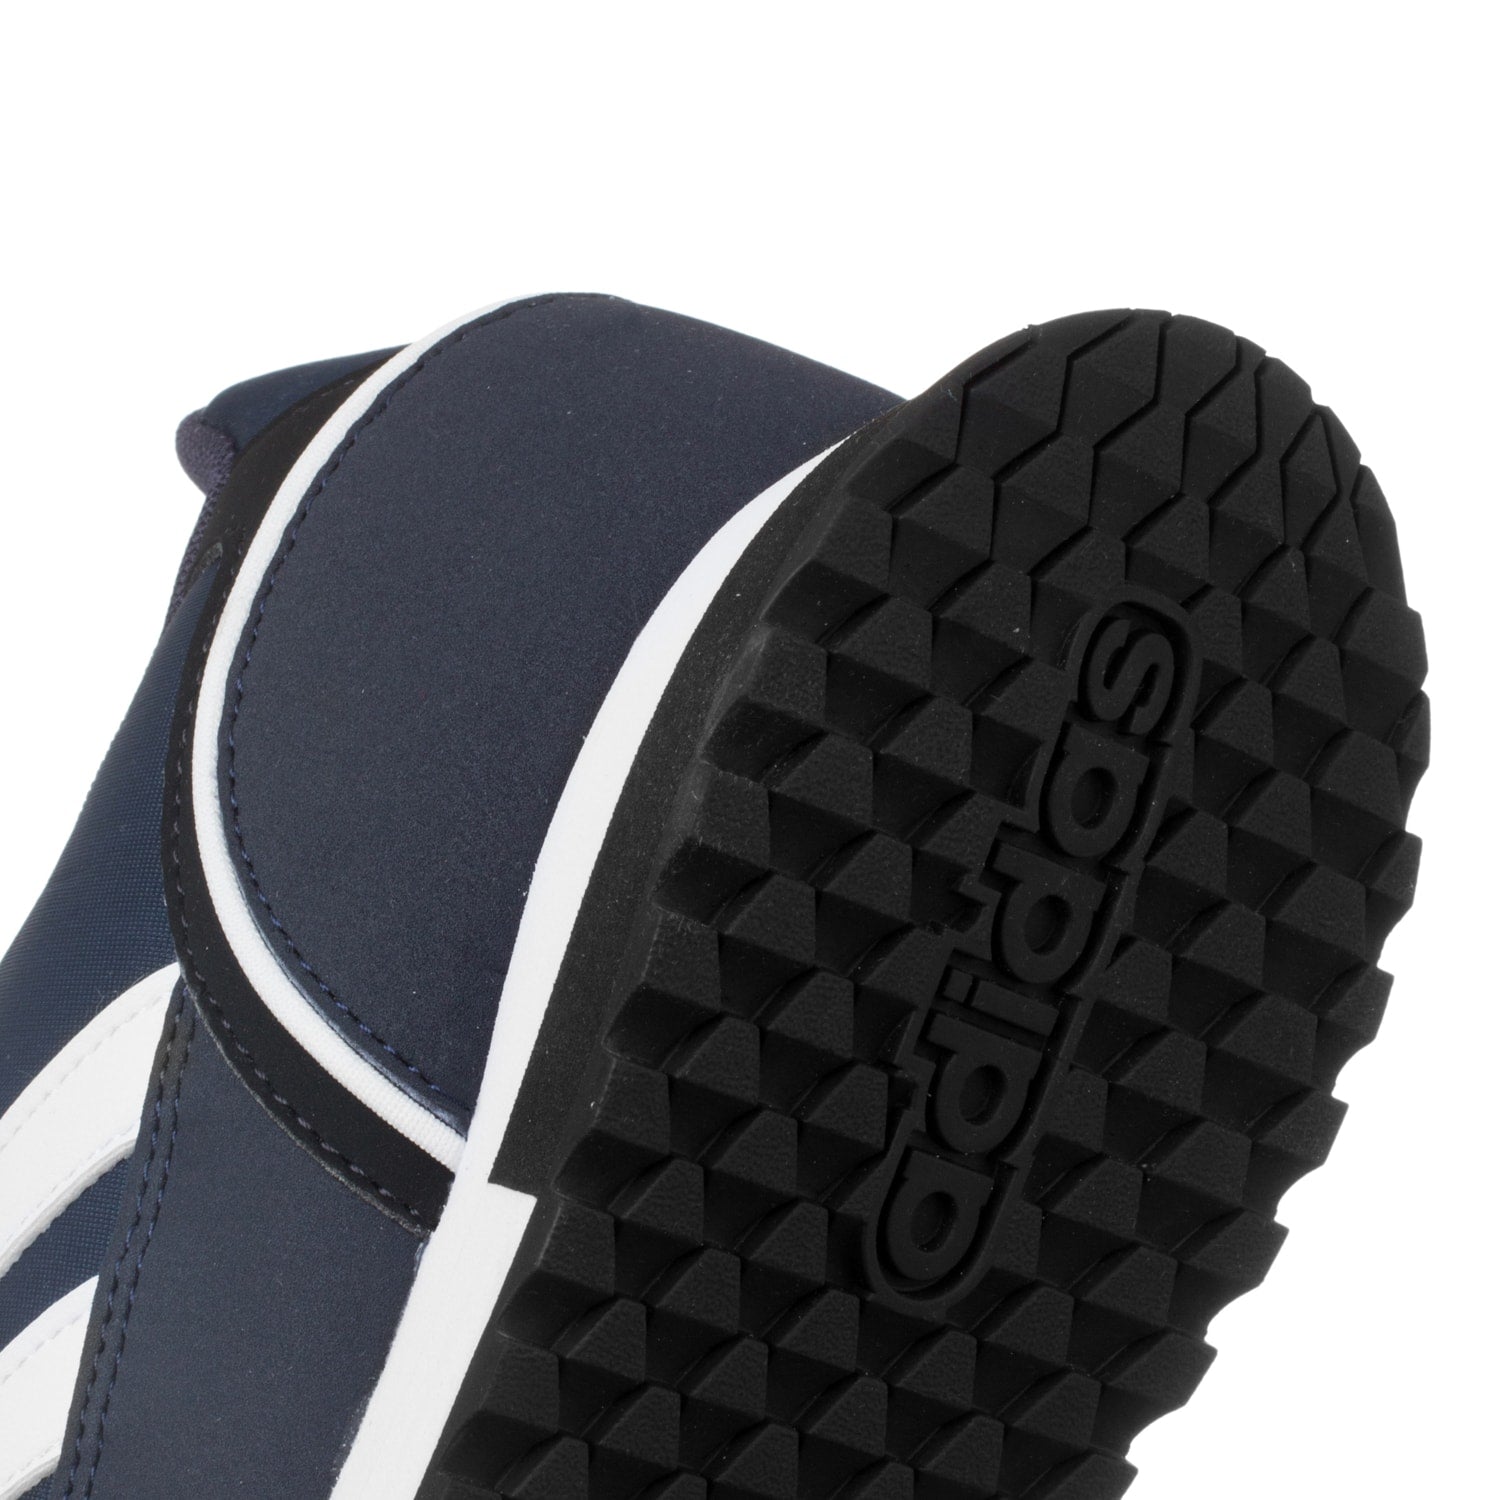 Tenis Adidas 8K FY8039 - Azul Marino - Hombre | Shoelander.com - Footwear Retail